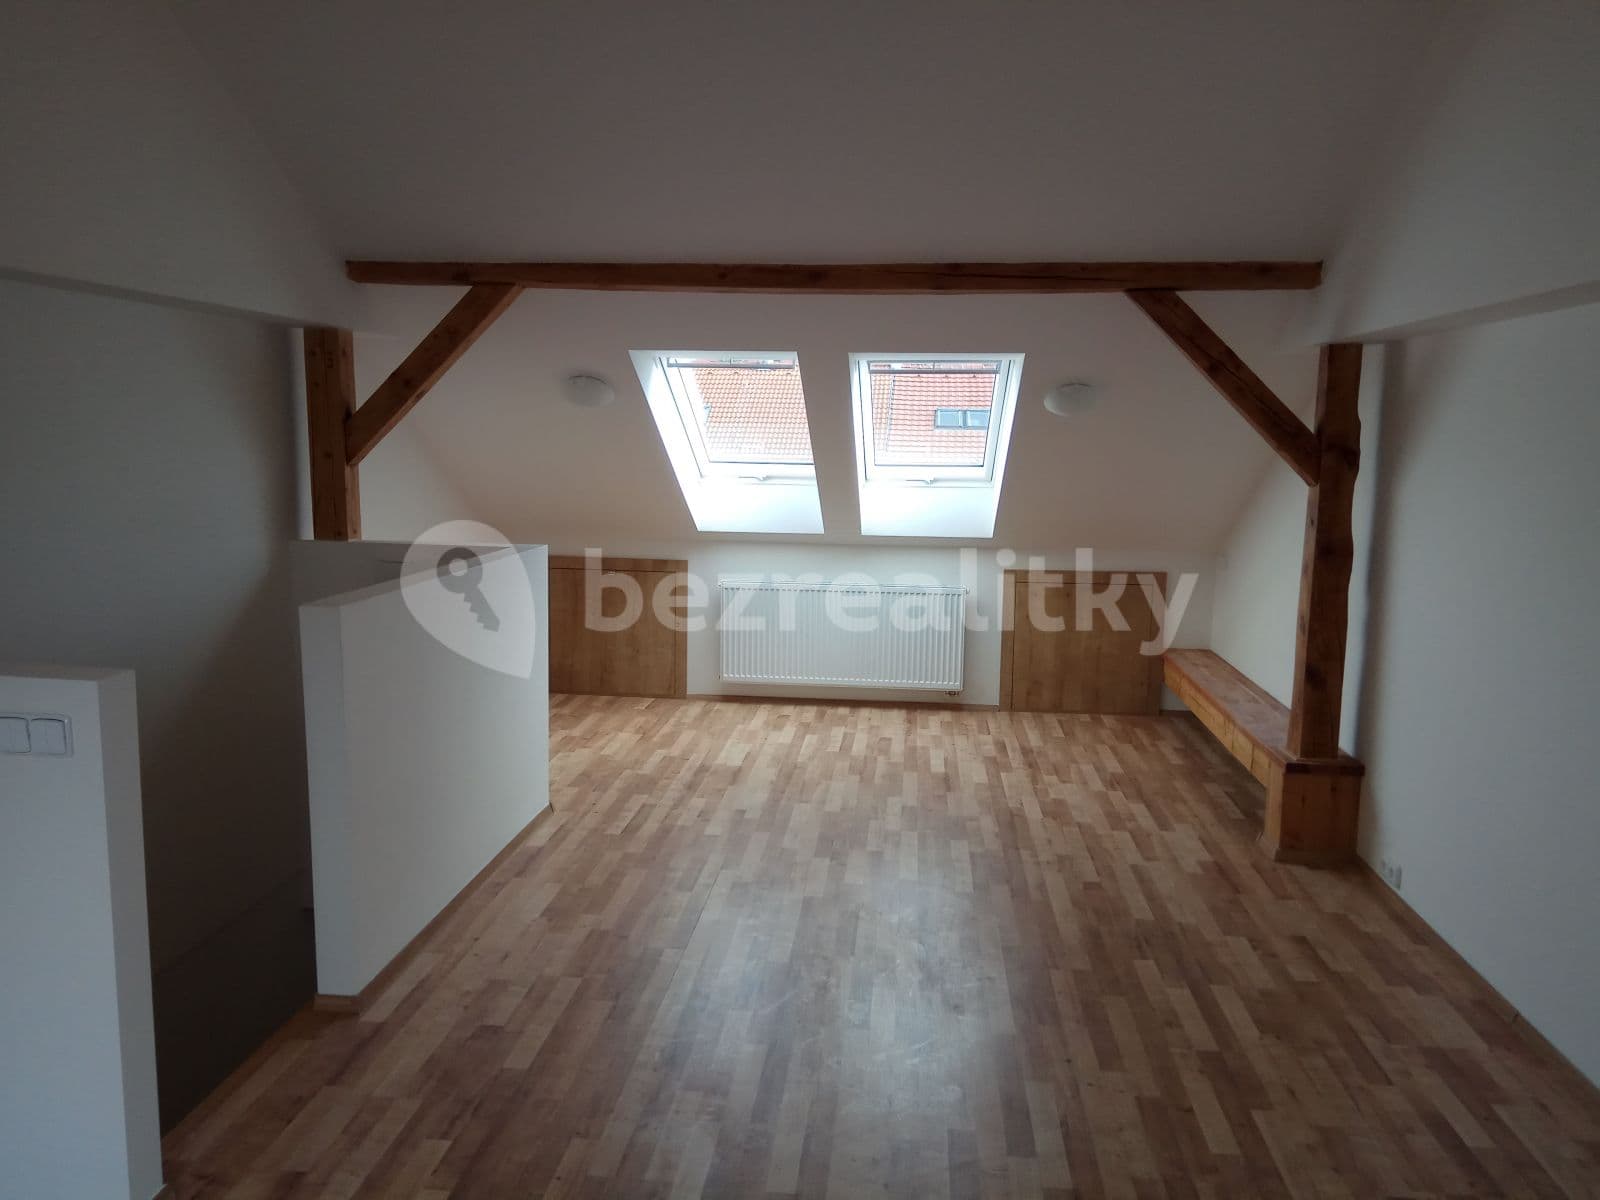 house to rent, 120 m², Dvouletky, Prague, Prague